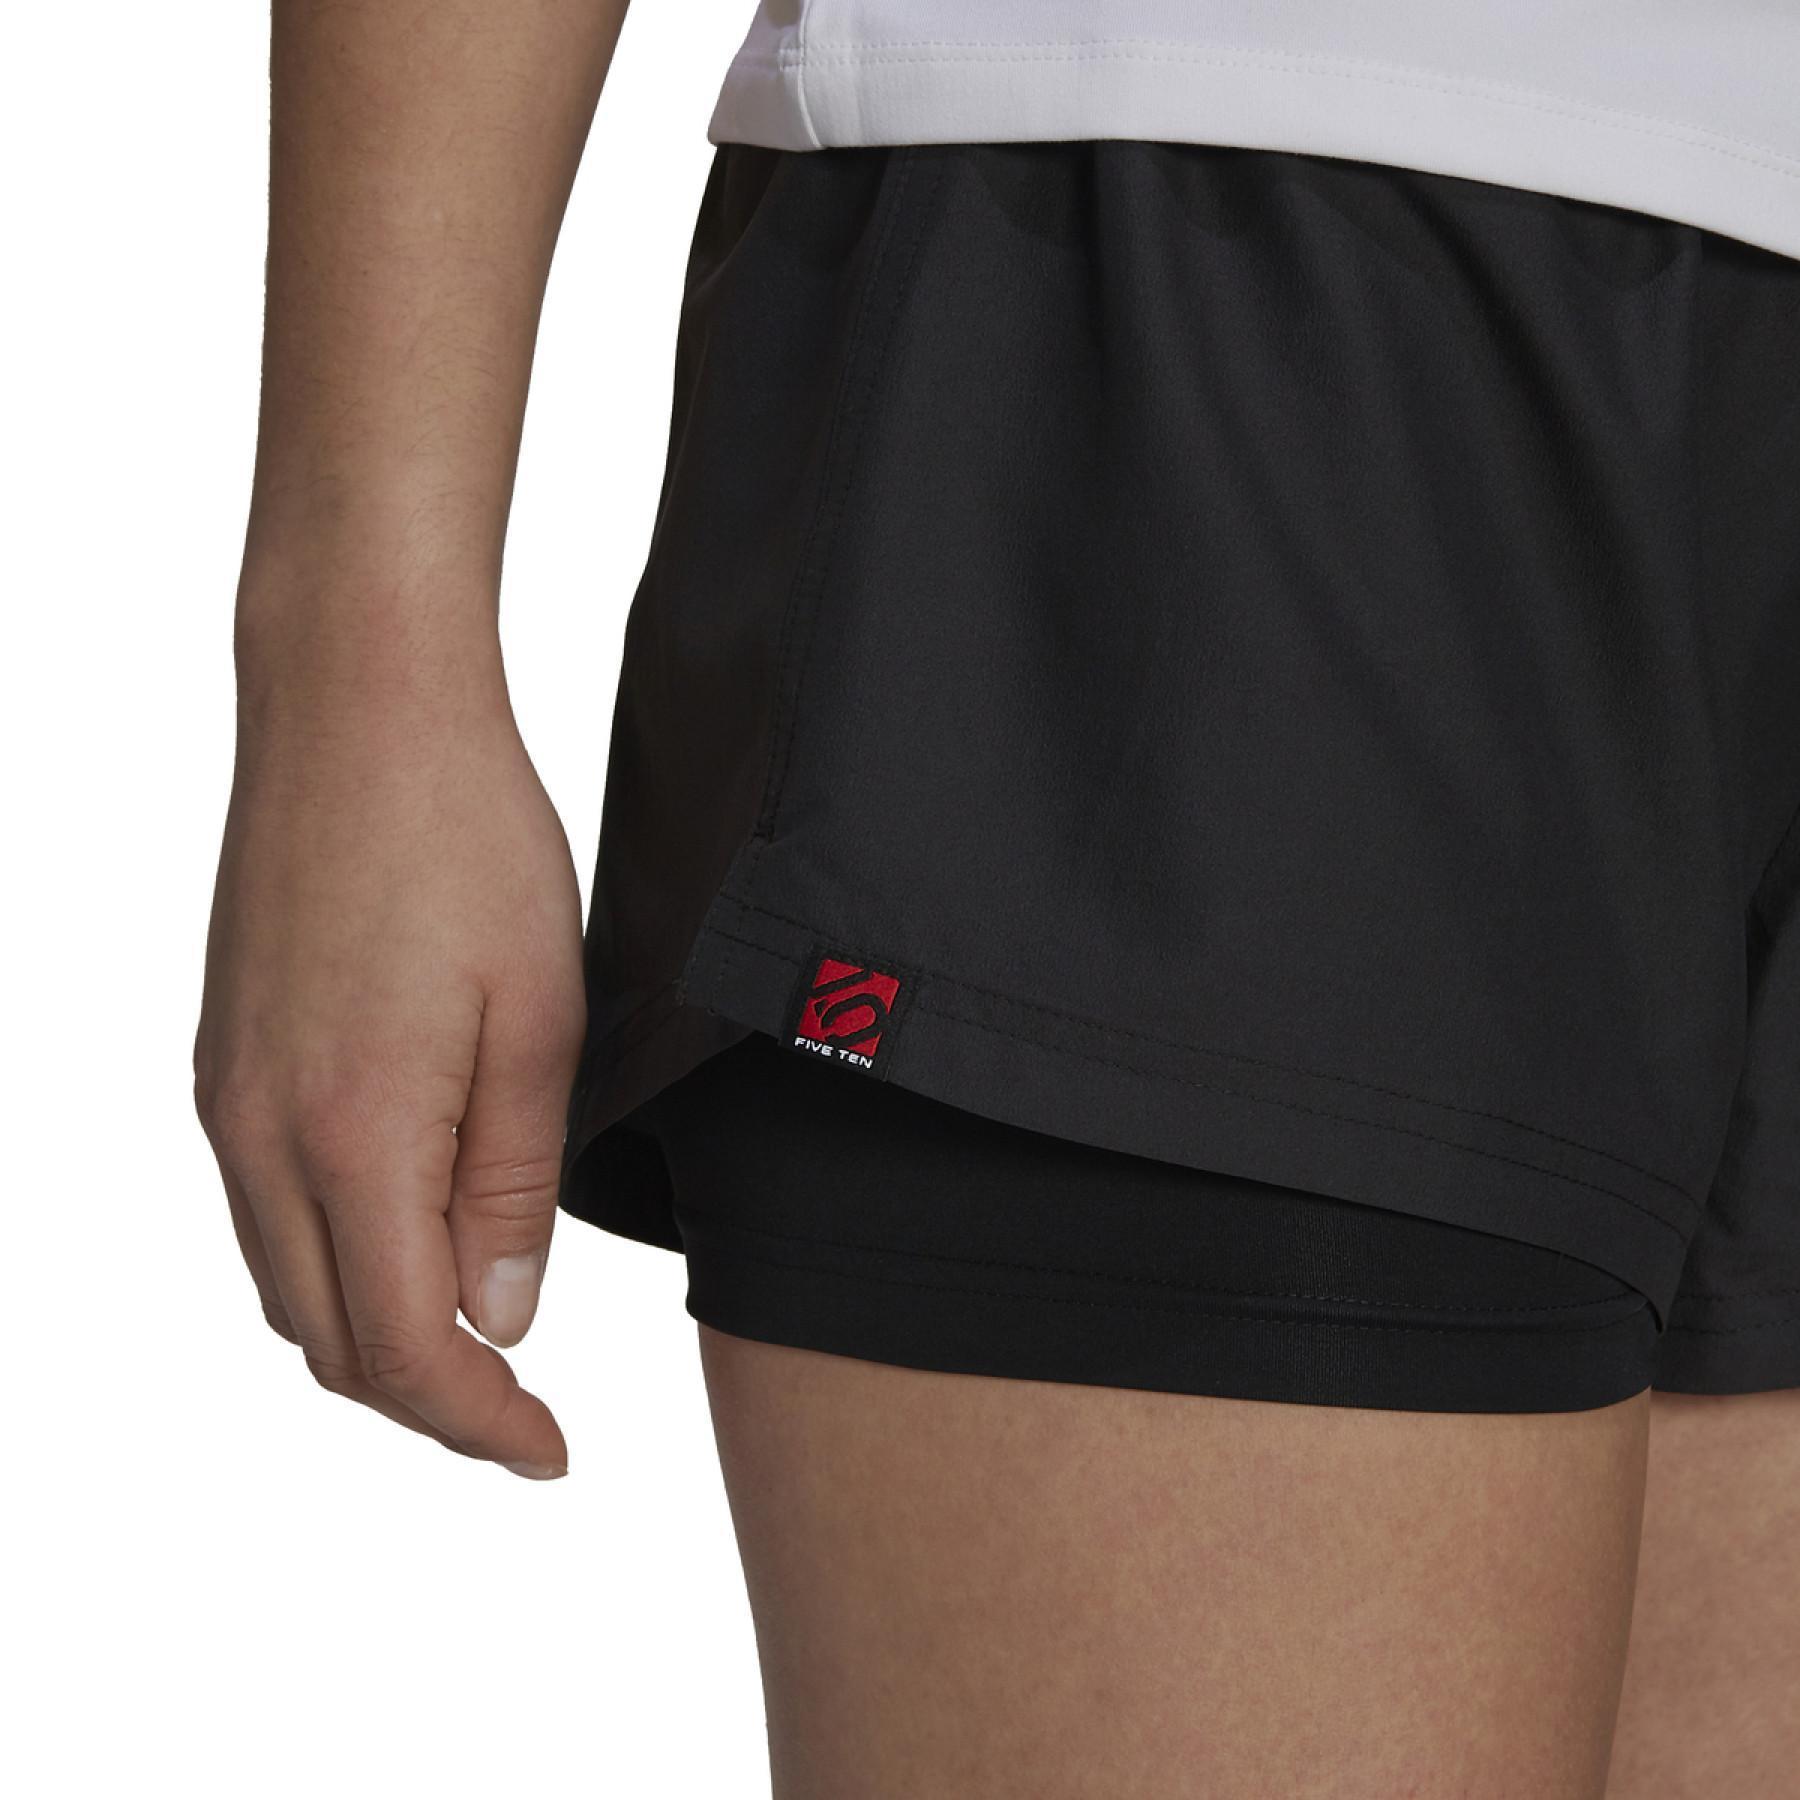 Dames shorts adidas 5.10 Climb2in1